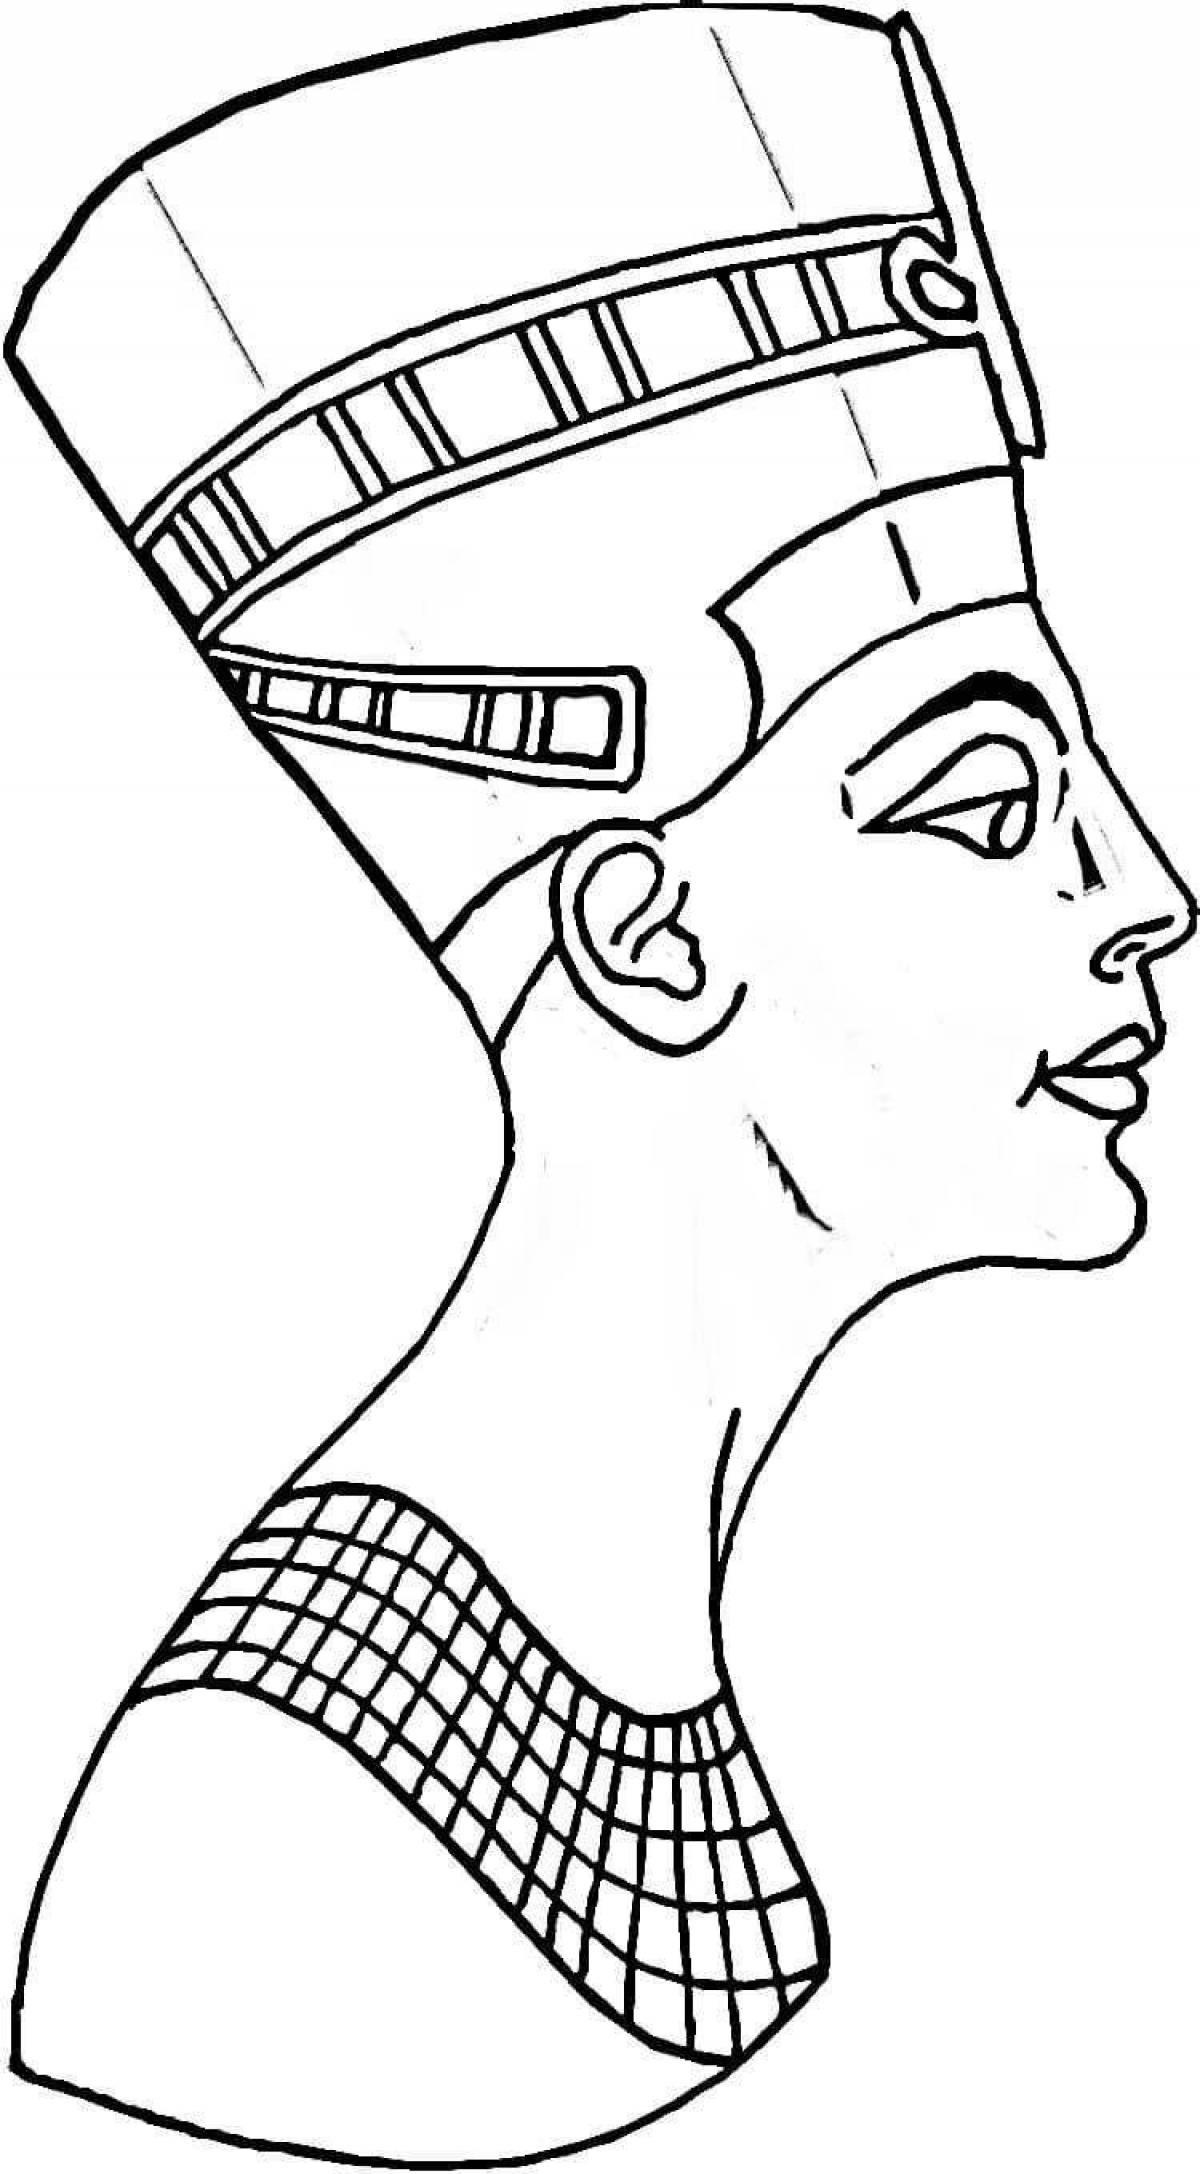 Нефертити царица Египта рисунок